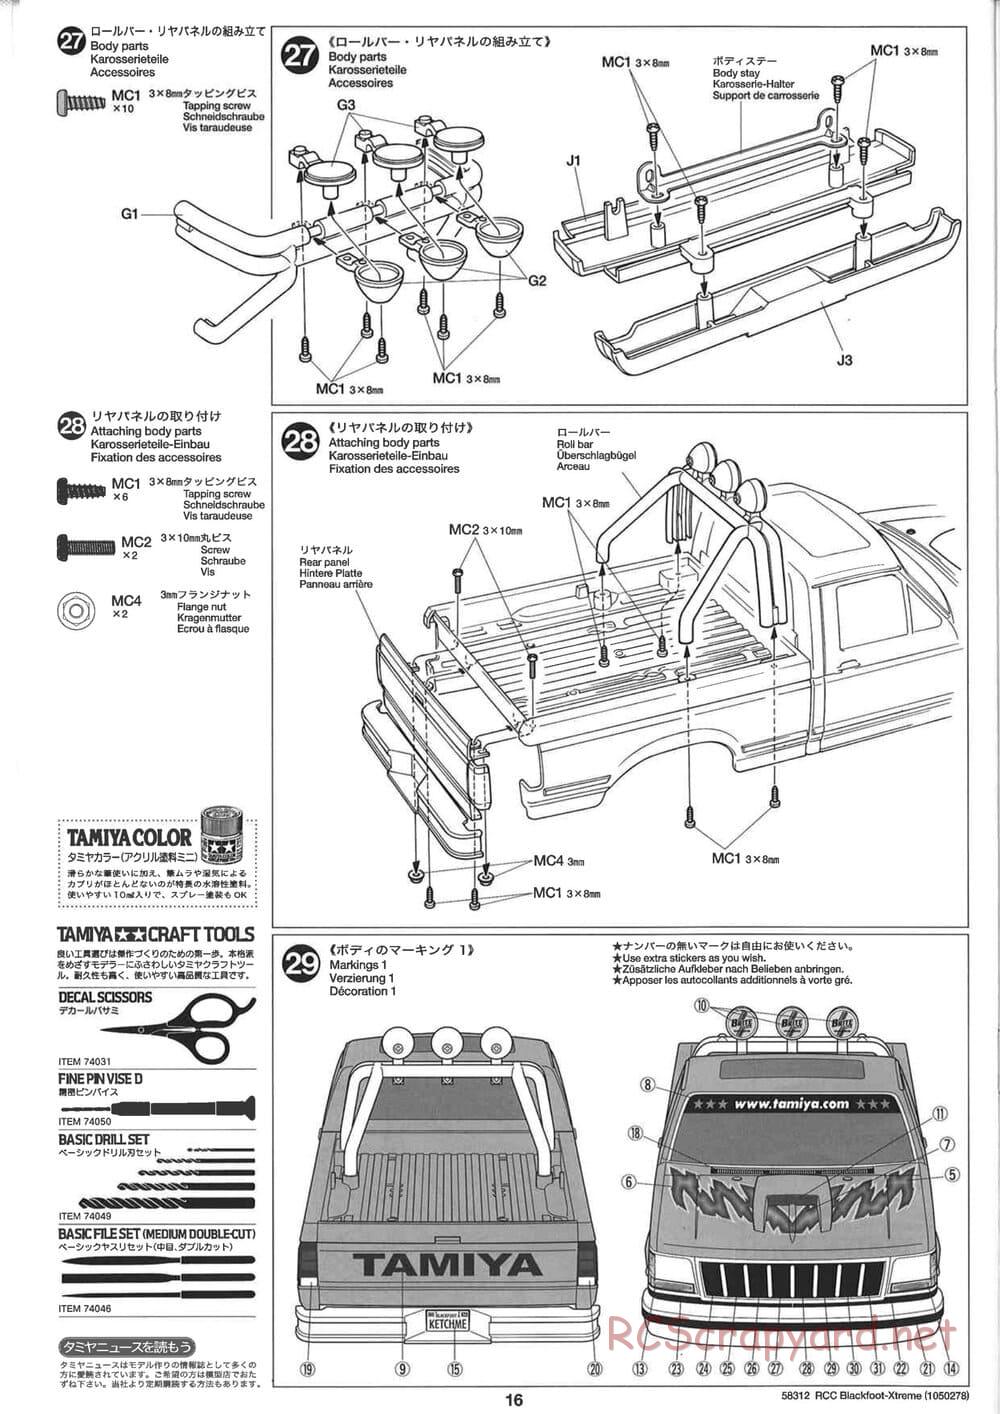 Tamiya - Blackfoot Xtreme - WT-01 Chassis - Manual - Page 16